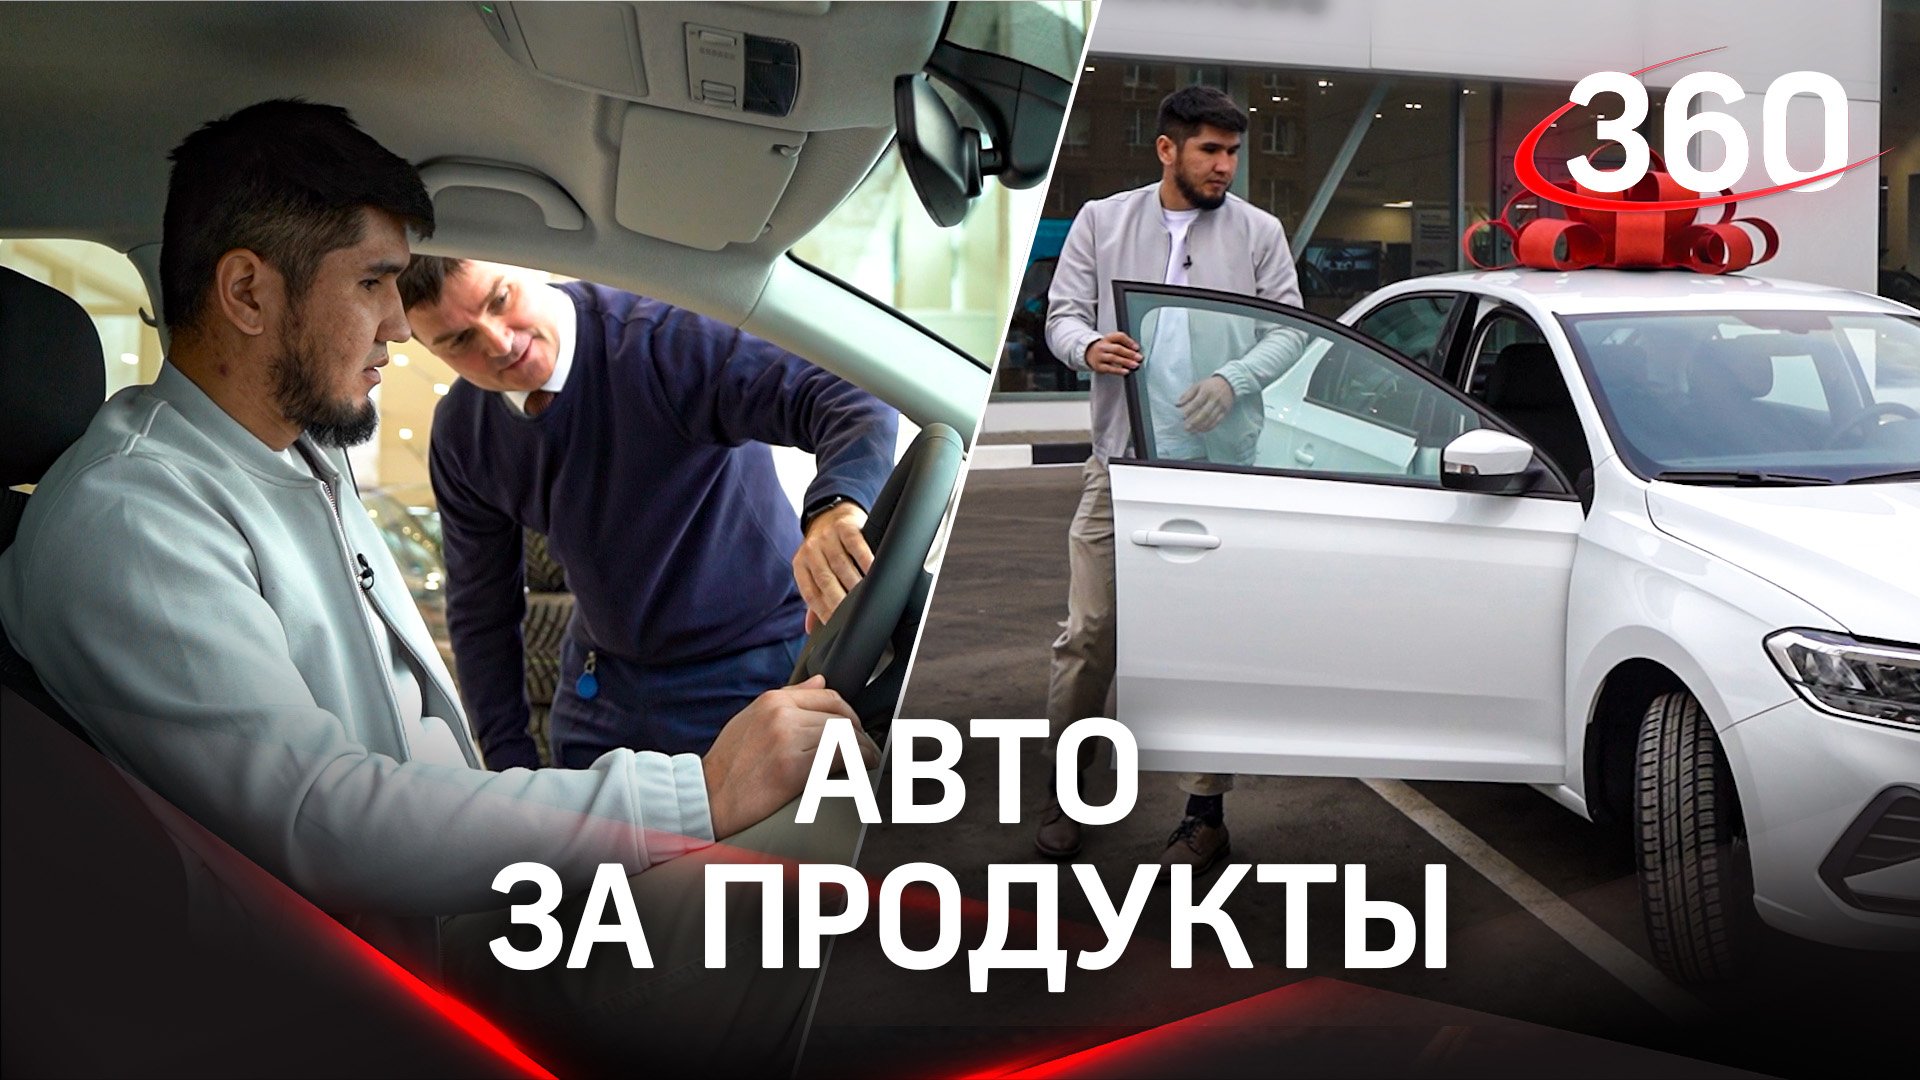 Житель Подмосковья выиграл автомобиль, купив продукты в магазине у дома